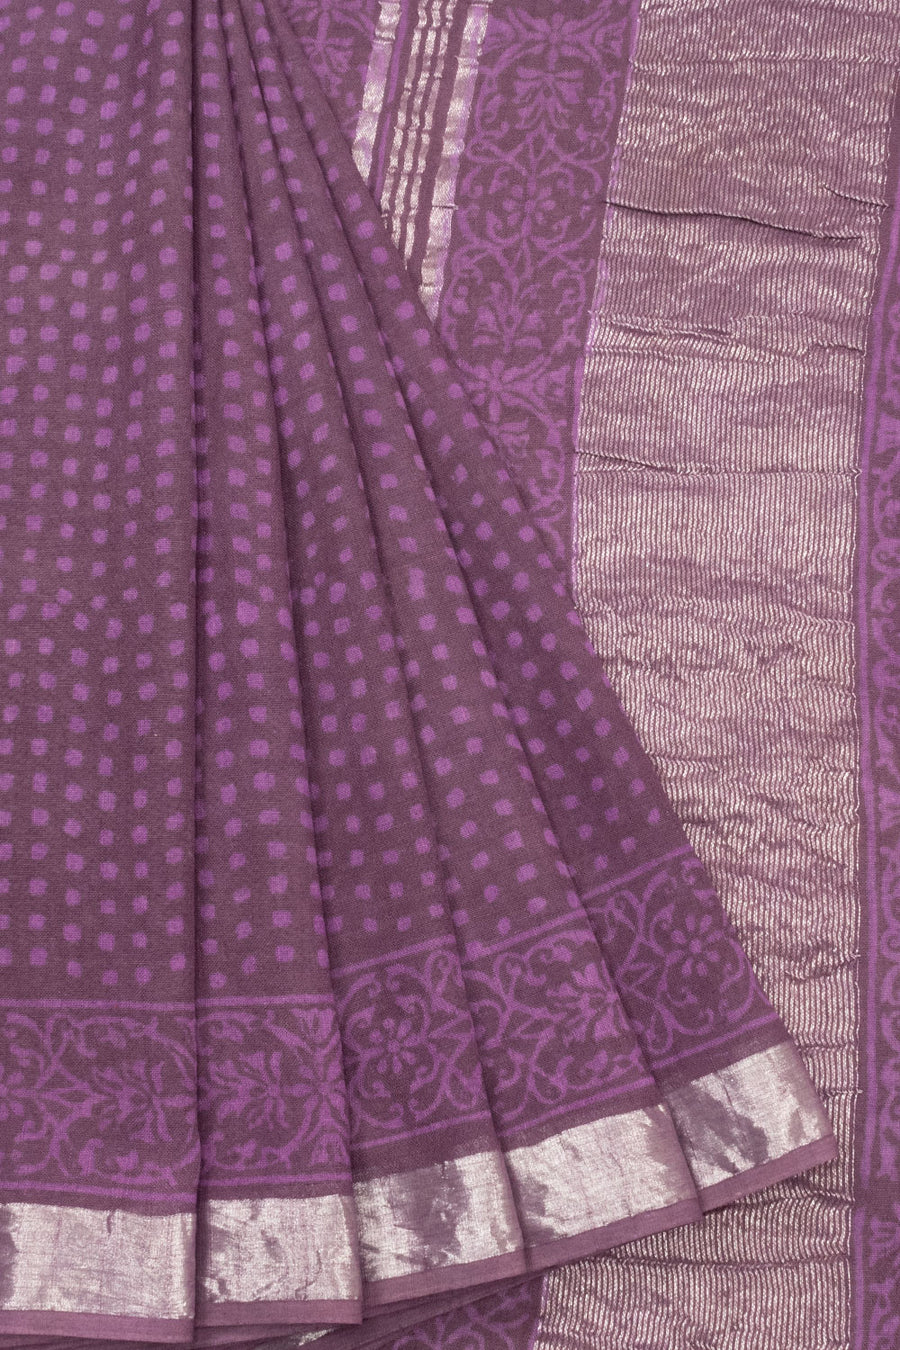 Velour Purple Hand Block Printed linen saree-Avishya